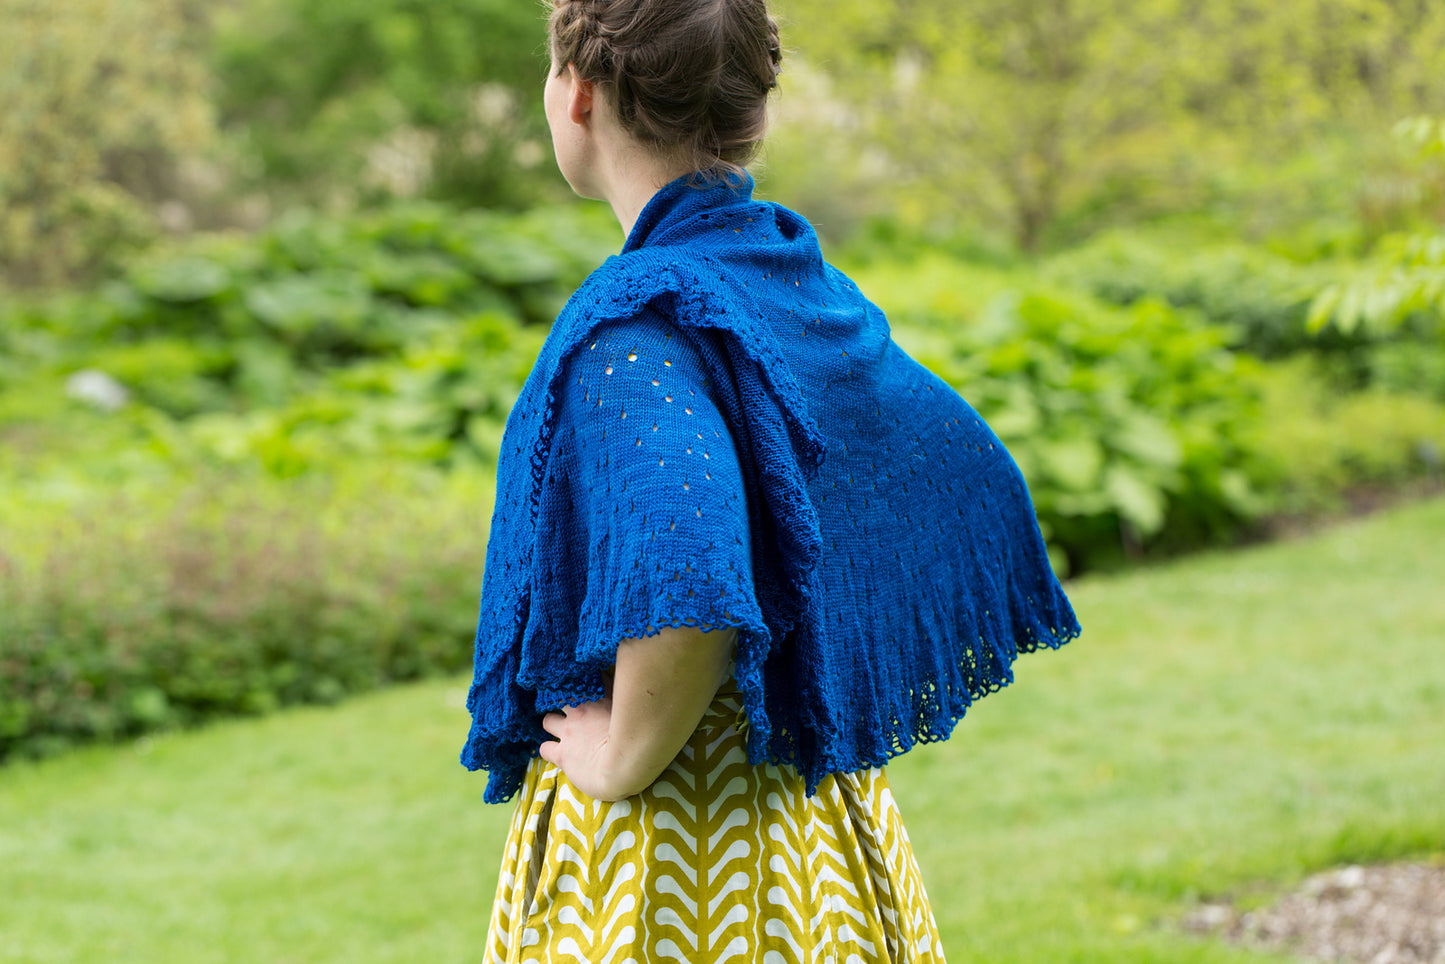 Crockern Tor shawl knitting pattern by Ysolda Teague